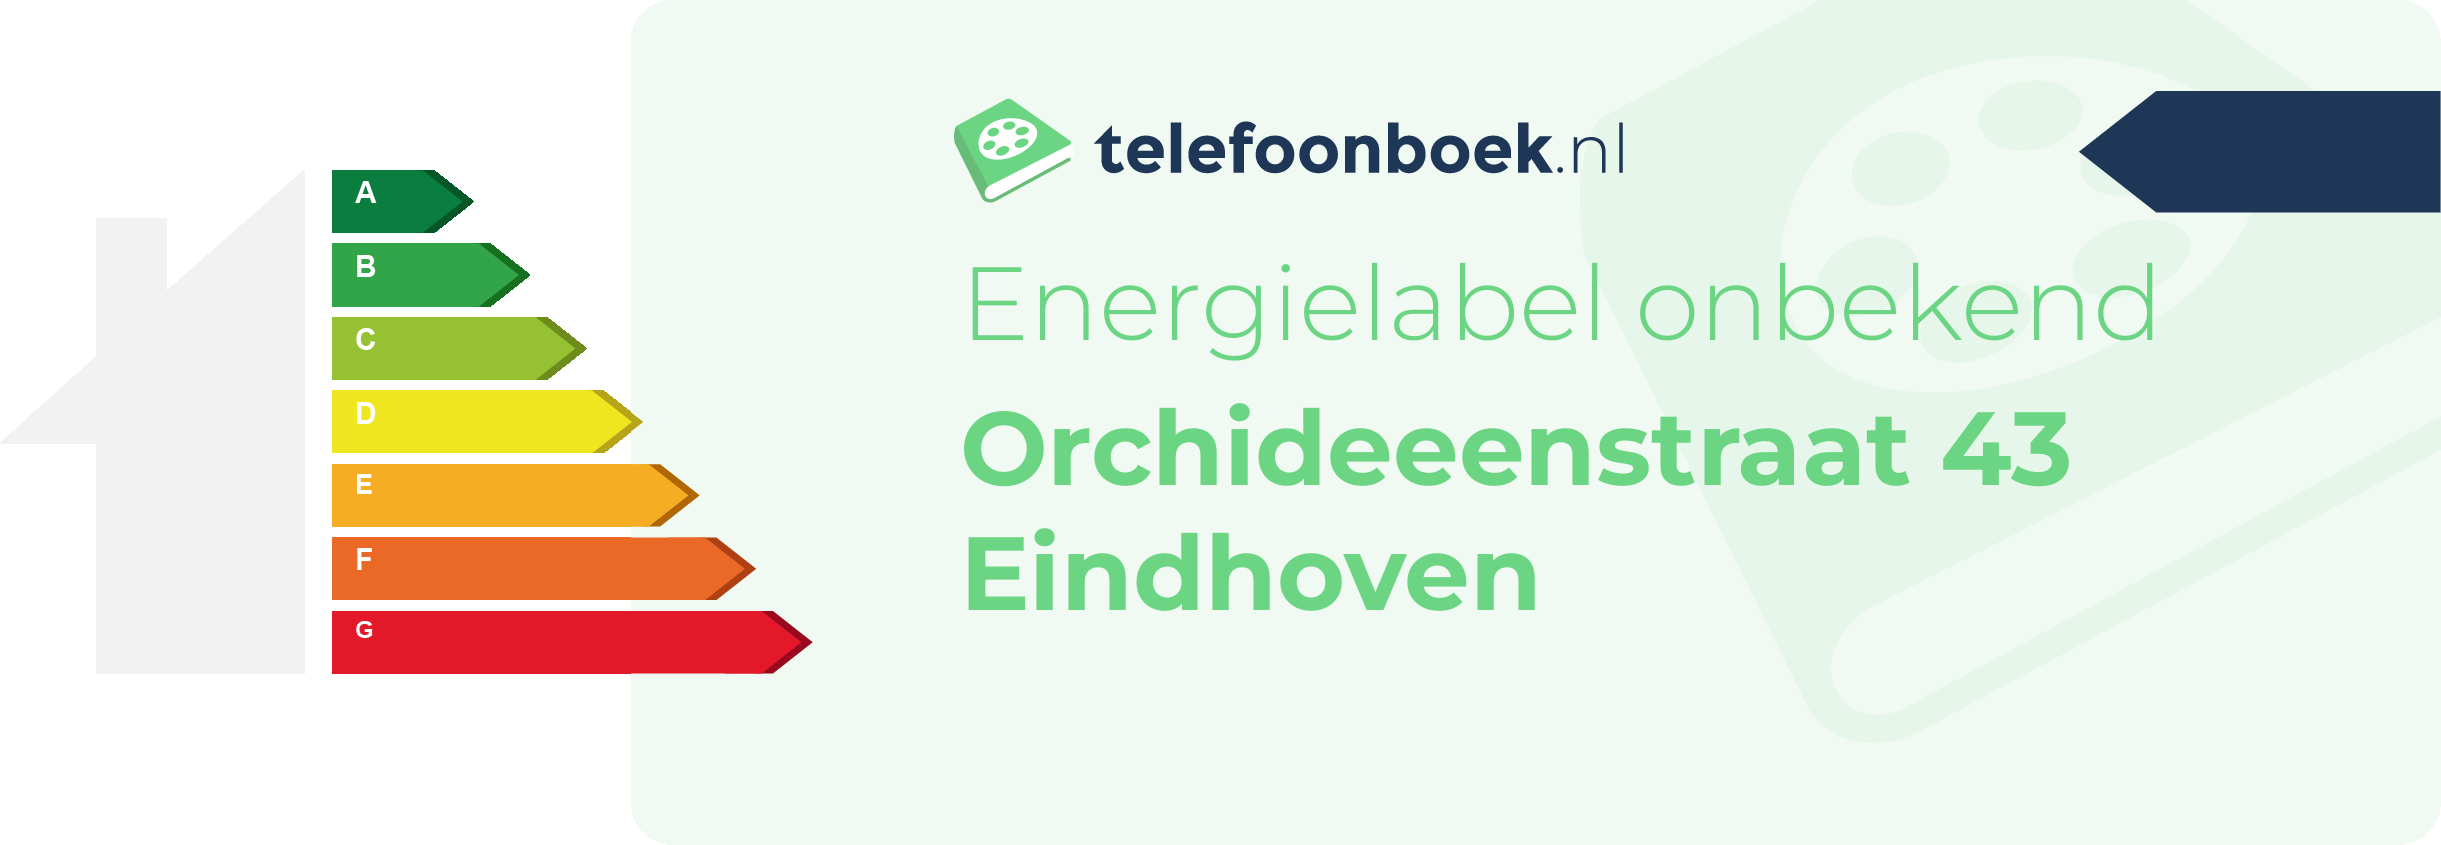 Energielabel Orchideeenstraat 43 Eindhoven